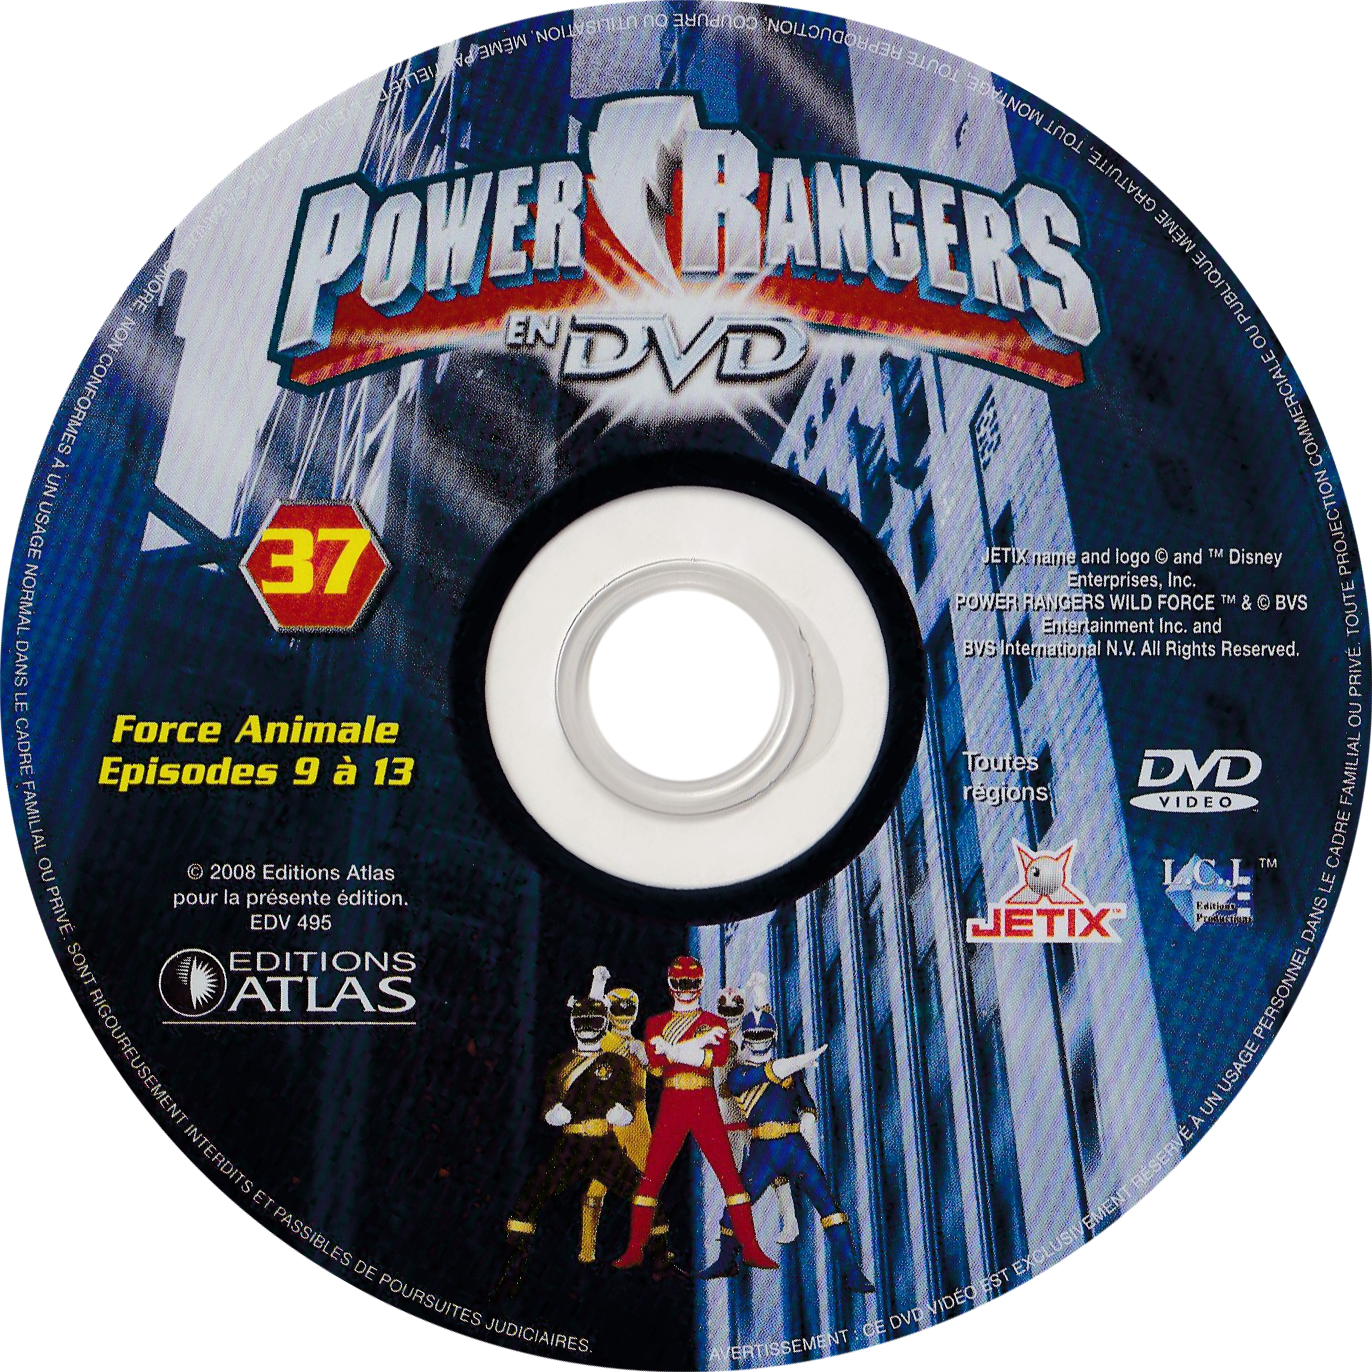 Power Rangers en DVD n°37